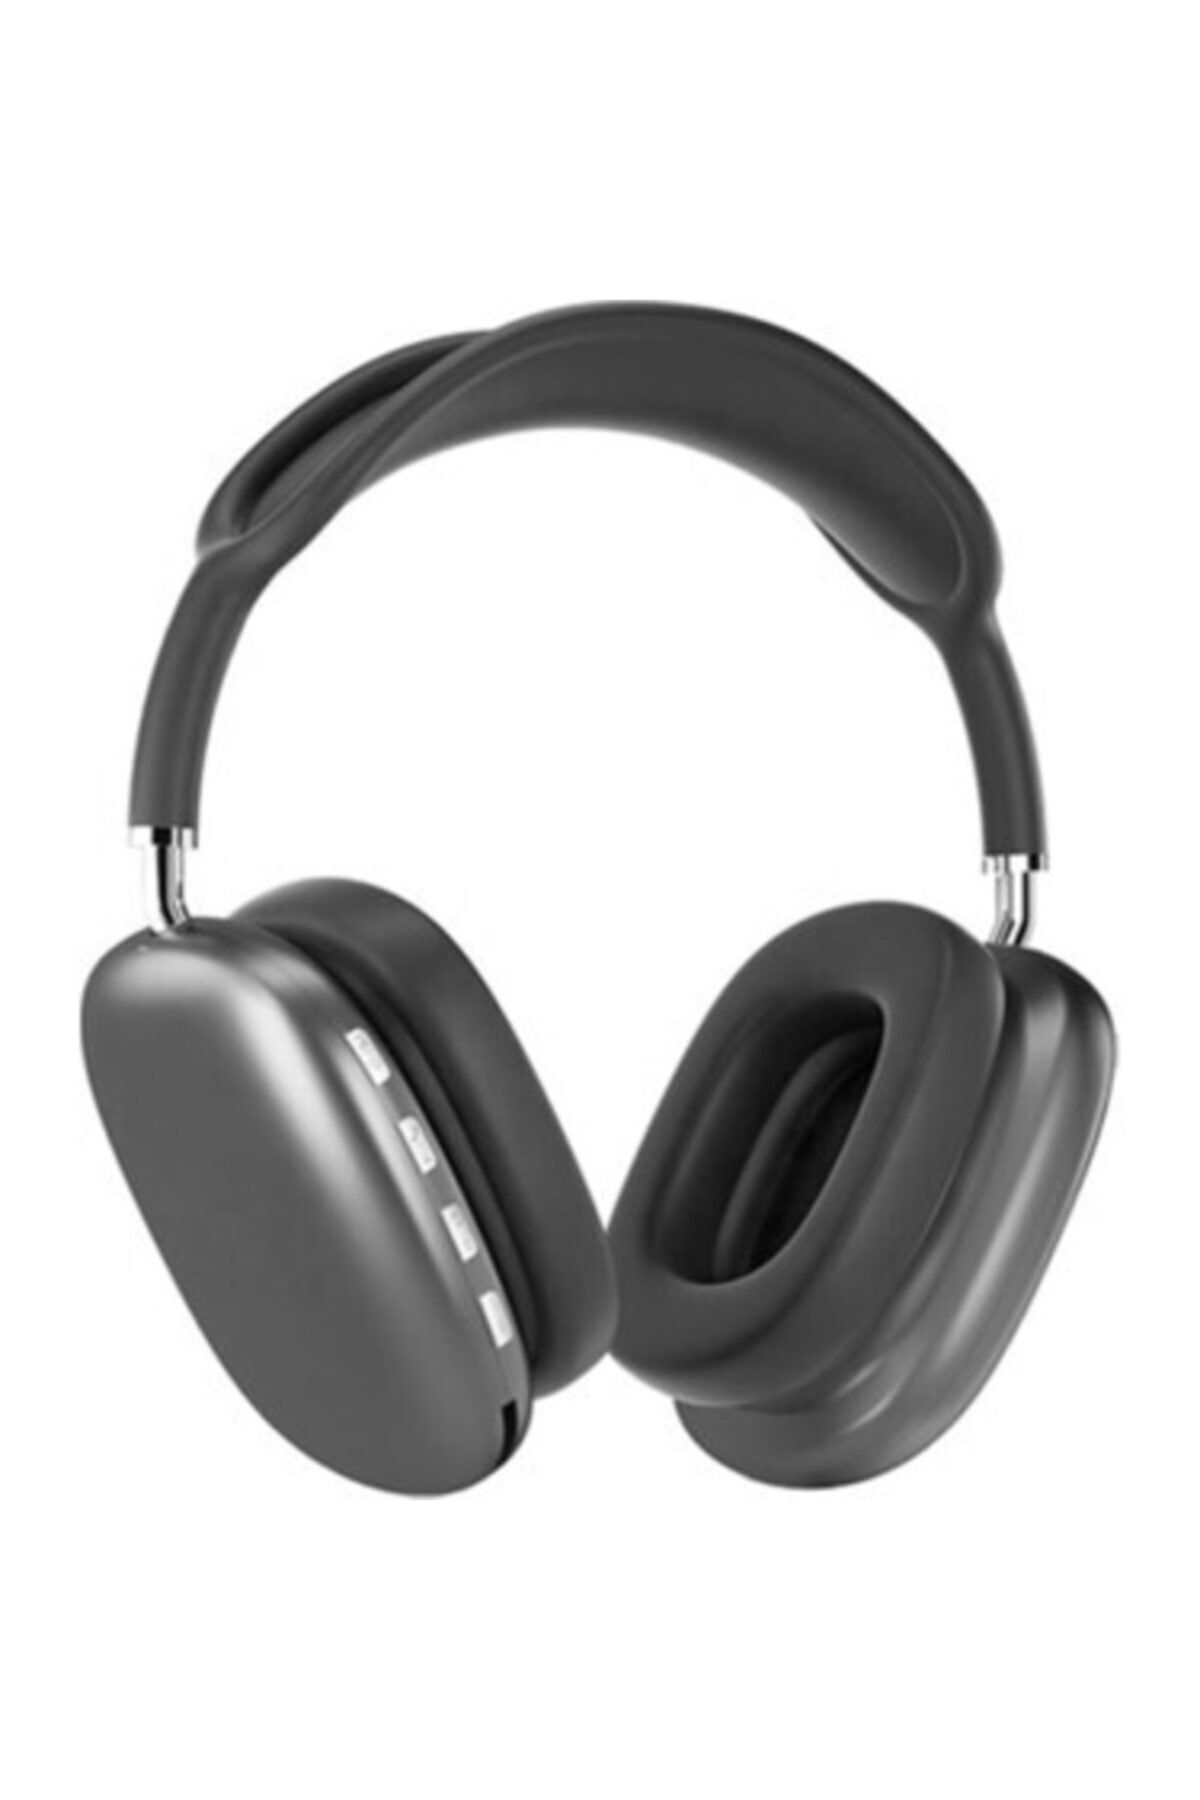 OWWOTECH P9 Kulaklık Kablosuz Bluetooth Kulaklık Wireless 5.0 Müzik Kulaklığı